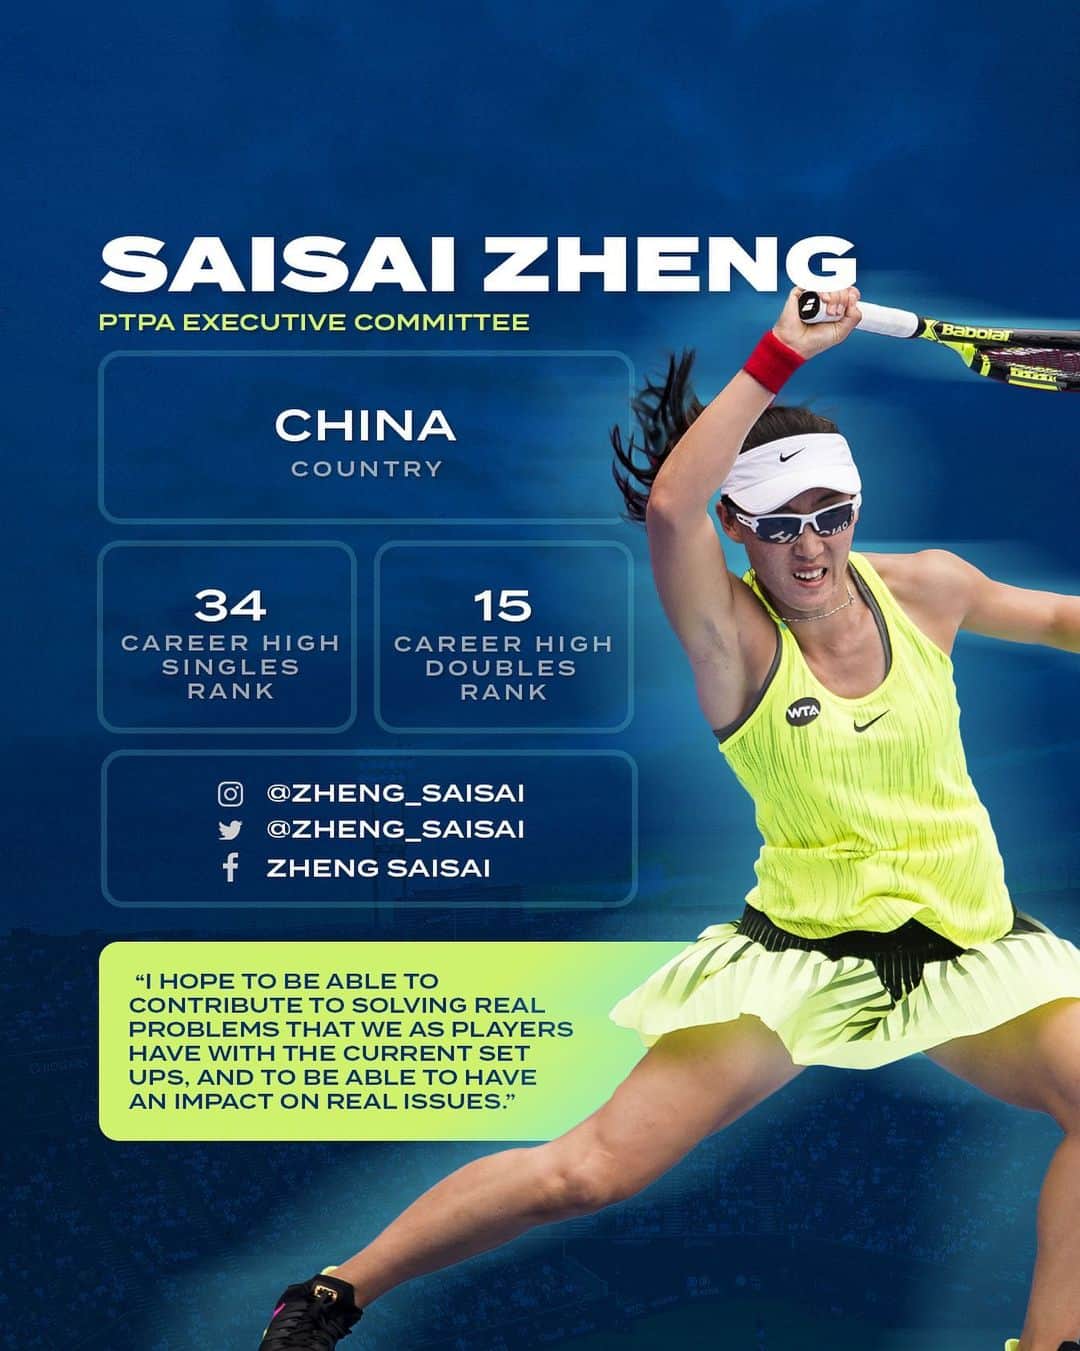 ジェン・サイサイのインスタグラム：「𝙄𝙣𝙩𝙧𝙤𝙙𝙪𝙘𝙞𝙣𝙜 𝙩𝙝𝙚 𝙛𝙞𝙧𝙨𝙩-𝙚𝙫𝙚𝙧 𝙋𝙏𝙋𝘼 𝙀𝙭𝙚𝙘𝙪𝙩𝙞𝙫𝙚 𝘾𝙤𝙢𝙢𝙞𝙩𝙩𝙚𝙚  @zheng_saisai: 5x women's doubles champion from Xi'an, China. 🇨🇳  -   推出史上第一个 𝙋𝙏𝙋𝘼 运动员执行委员会  @zheng_saisai：5 届女双冠军，来自中国西安。🇨🇳」